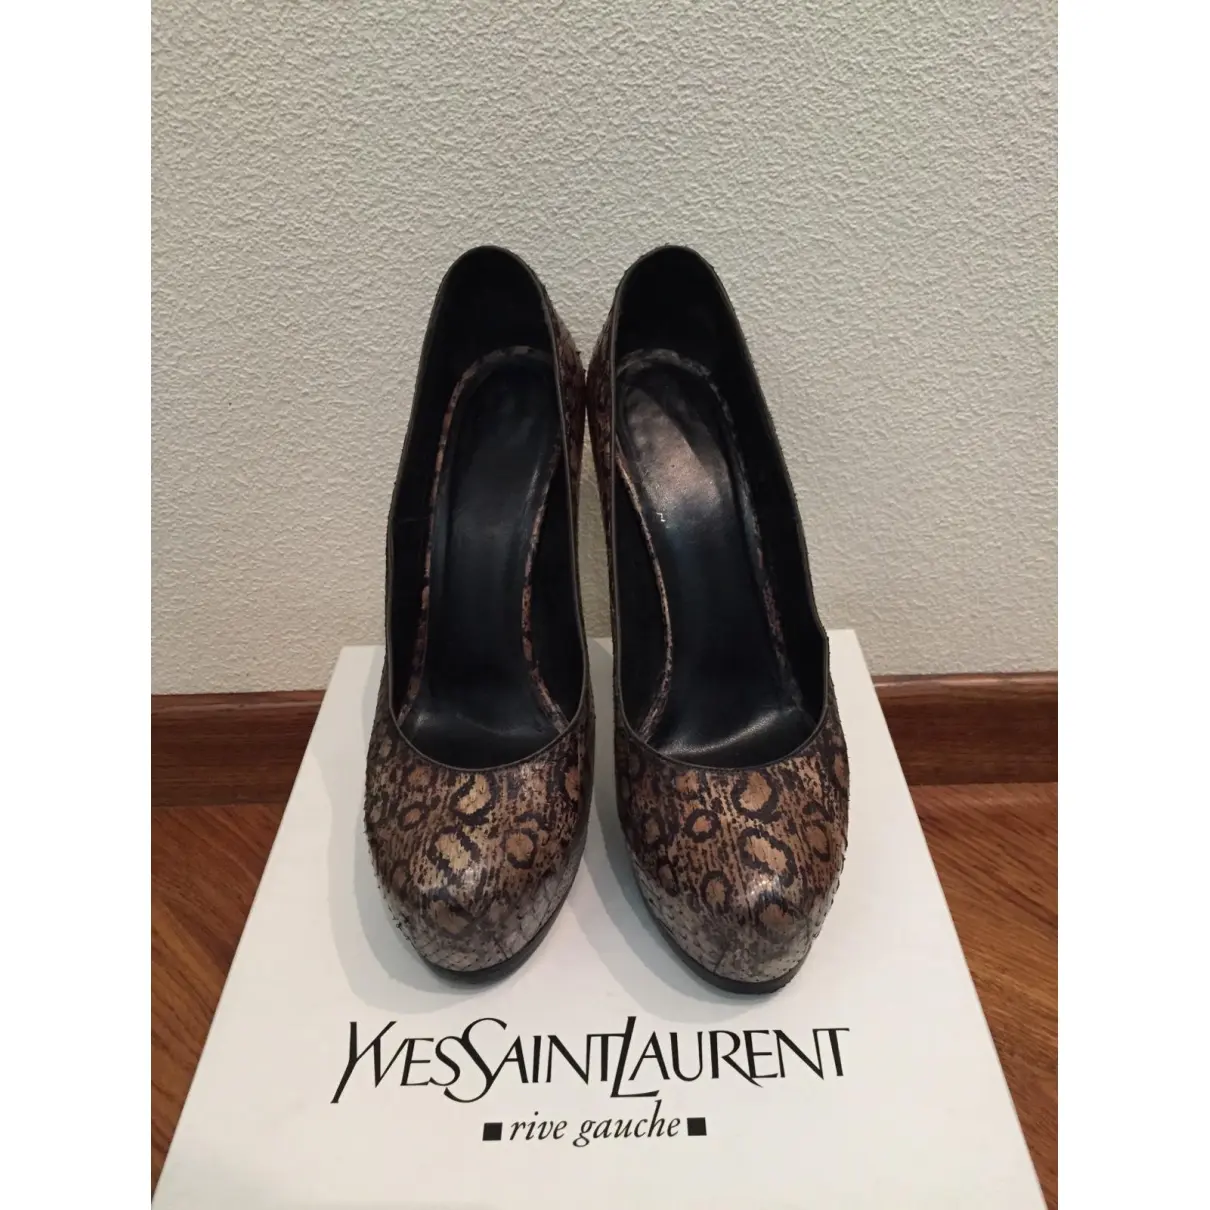 Luxury Yves Saint Laurent Heels Women - Vintage